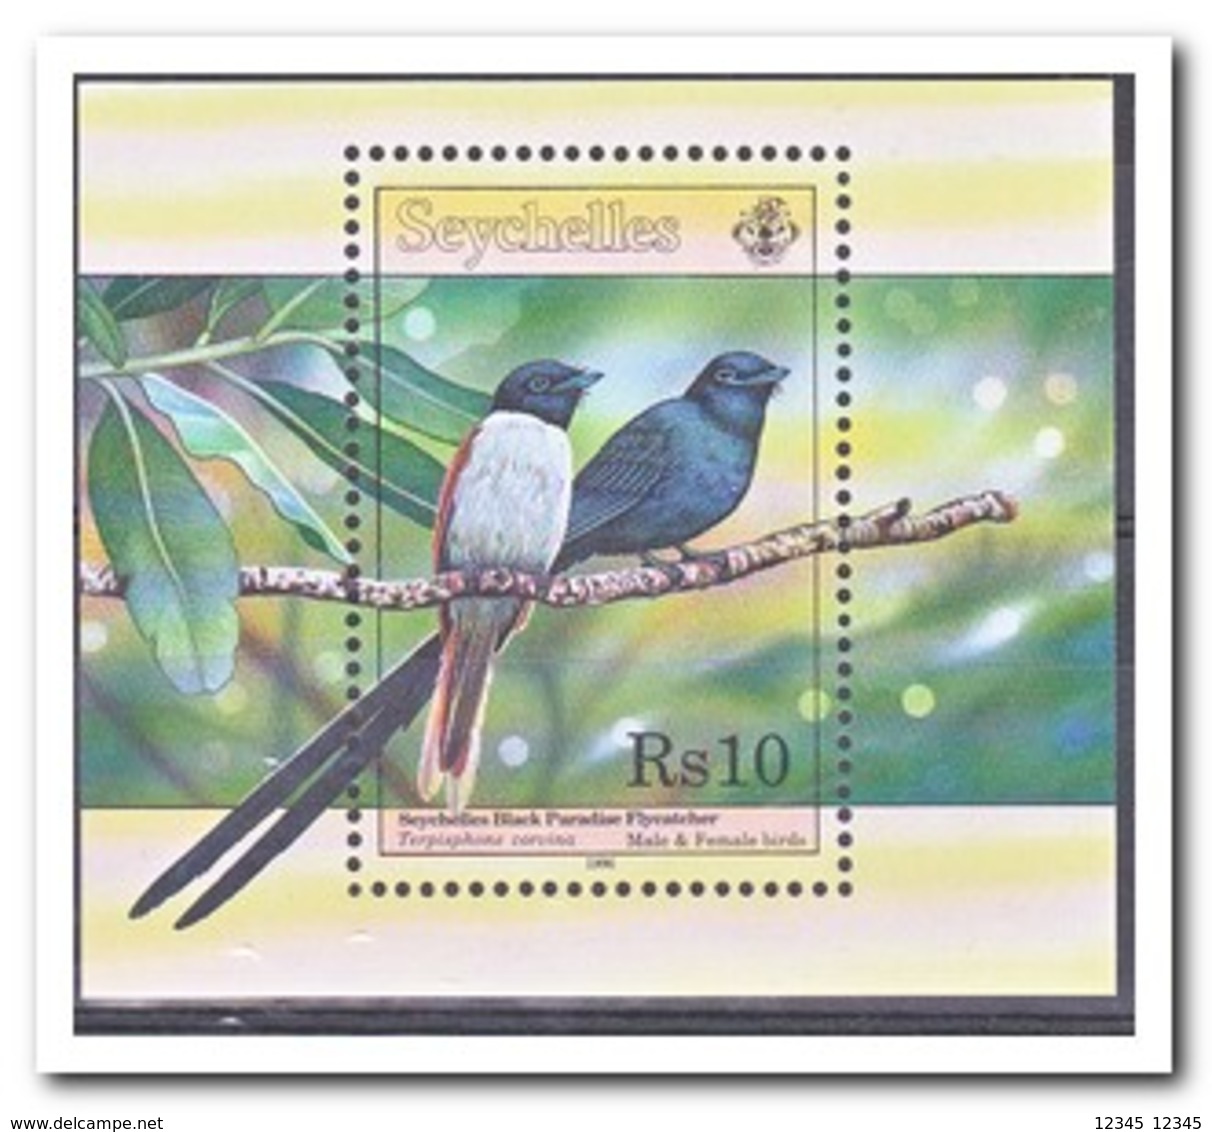 Seychellen 1996, Postfris MNH, Birds - Seychellen (1976-...)